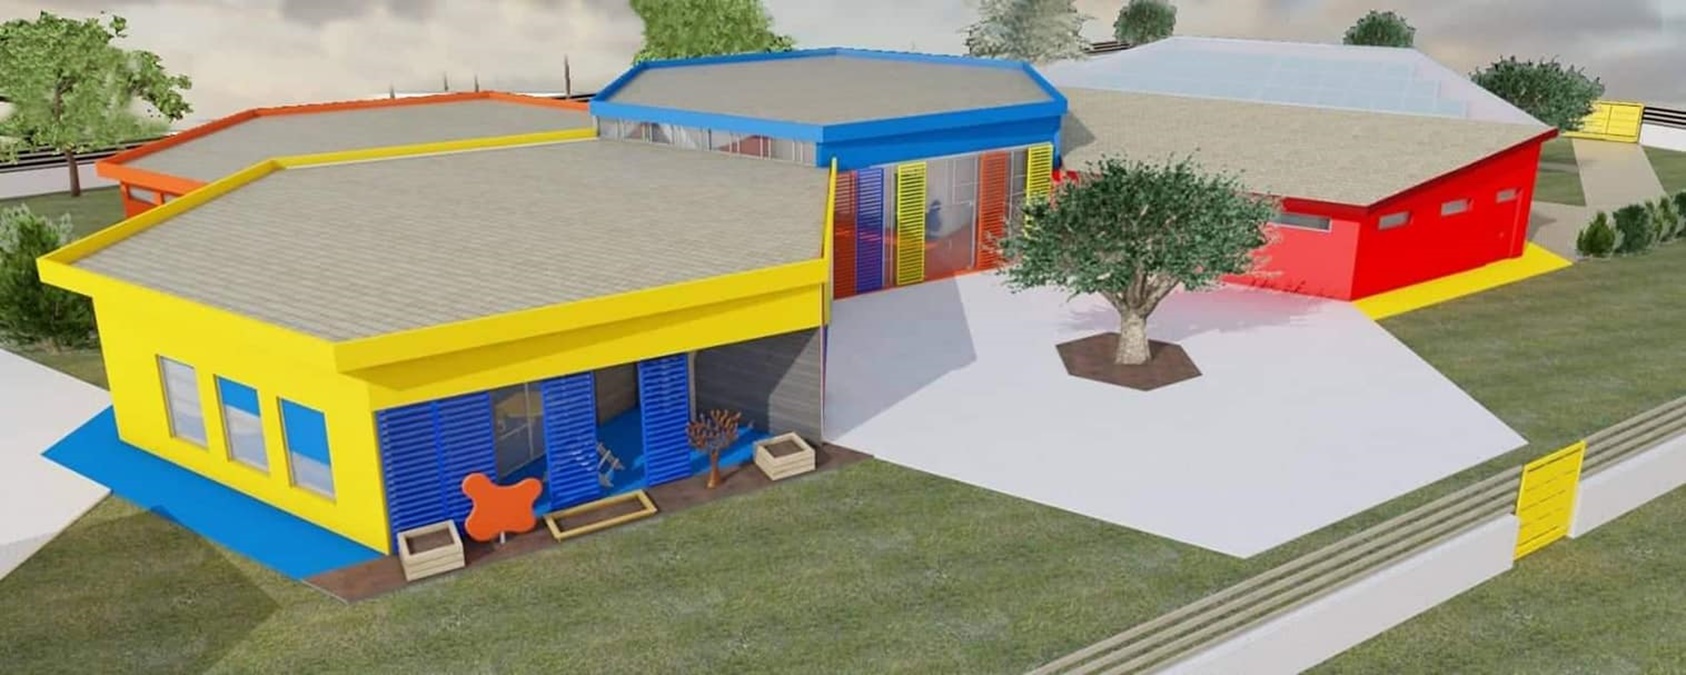 Taurianova, approvato il progetto per la nuova scuola dell’infanzia nell’Area 167